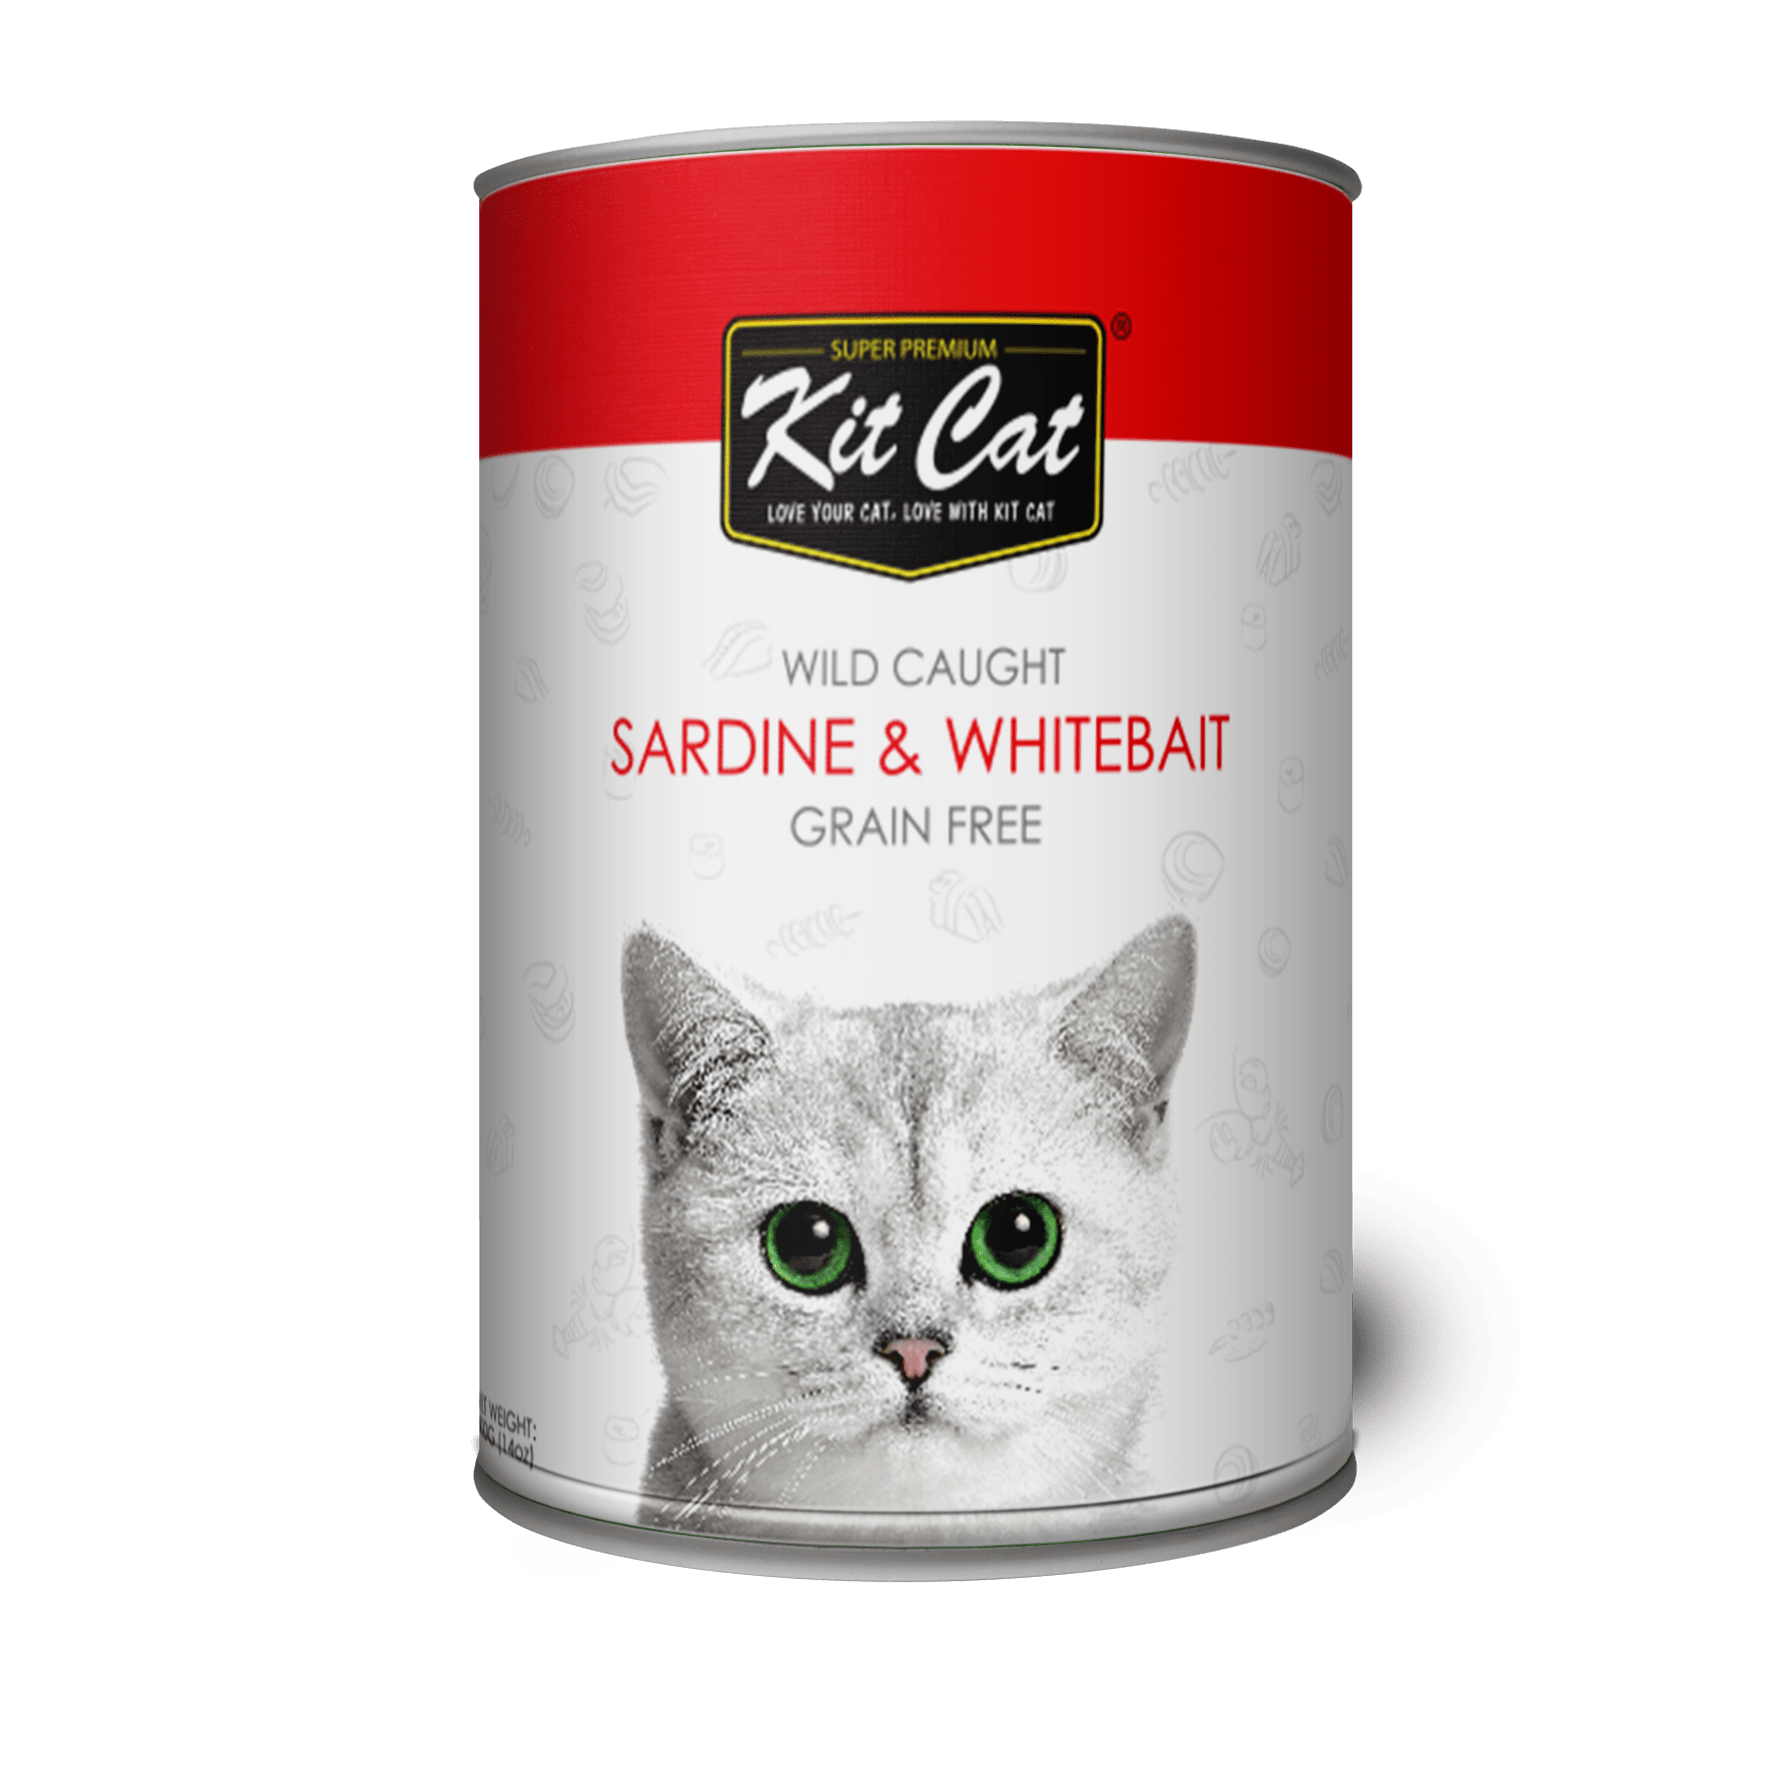 Кошачий корм. Kit Cat корм. Кит кэтс корм для кошек. Petshop корм для кошек. Красный корм для кошек